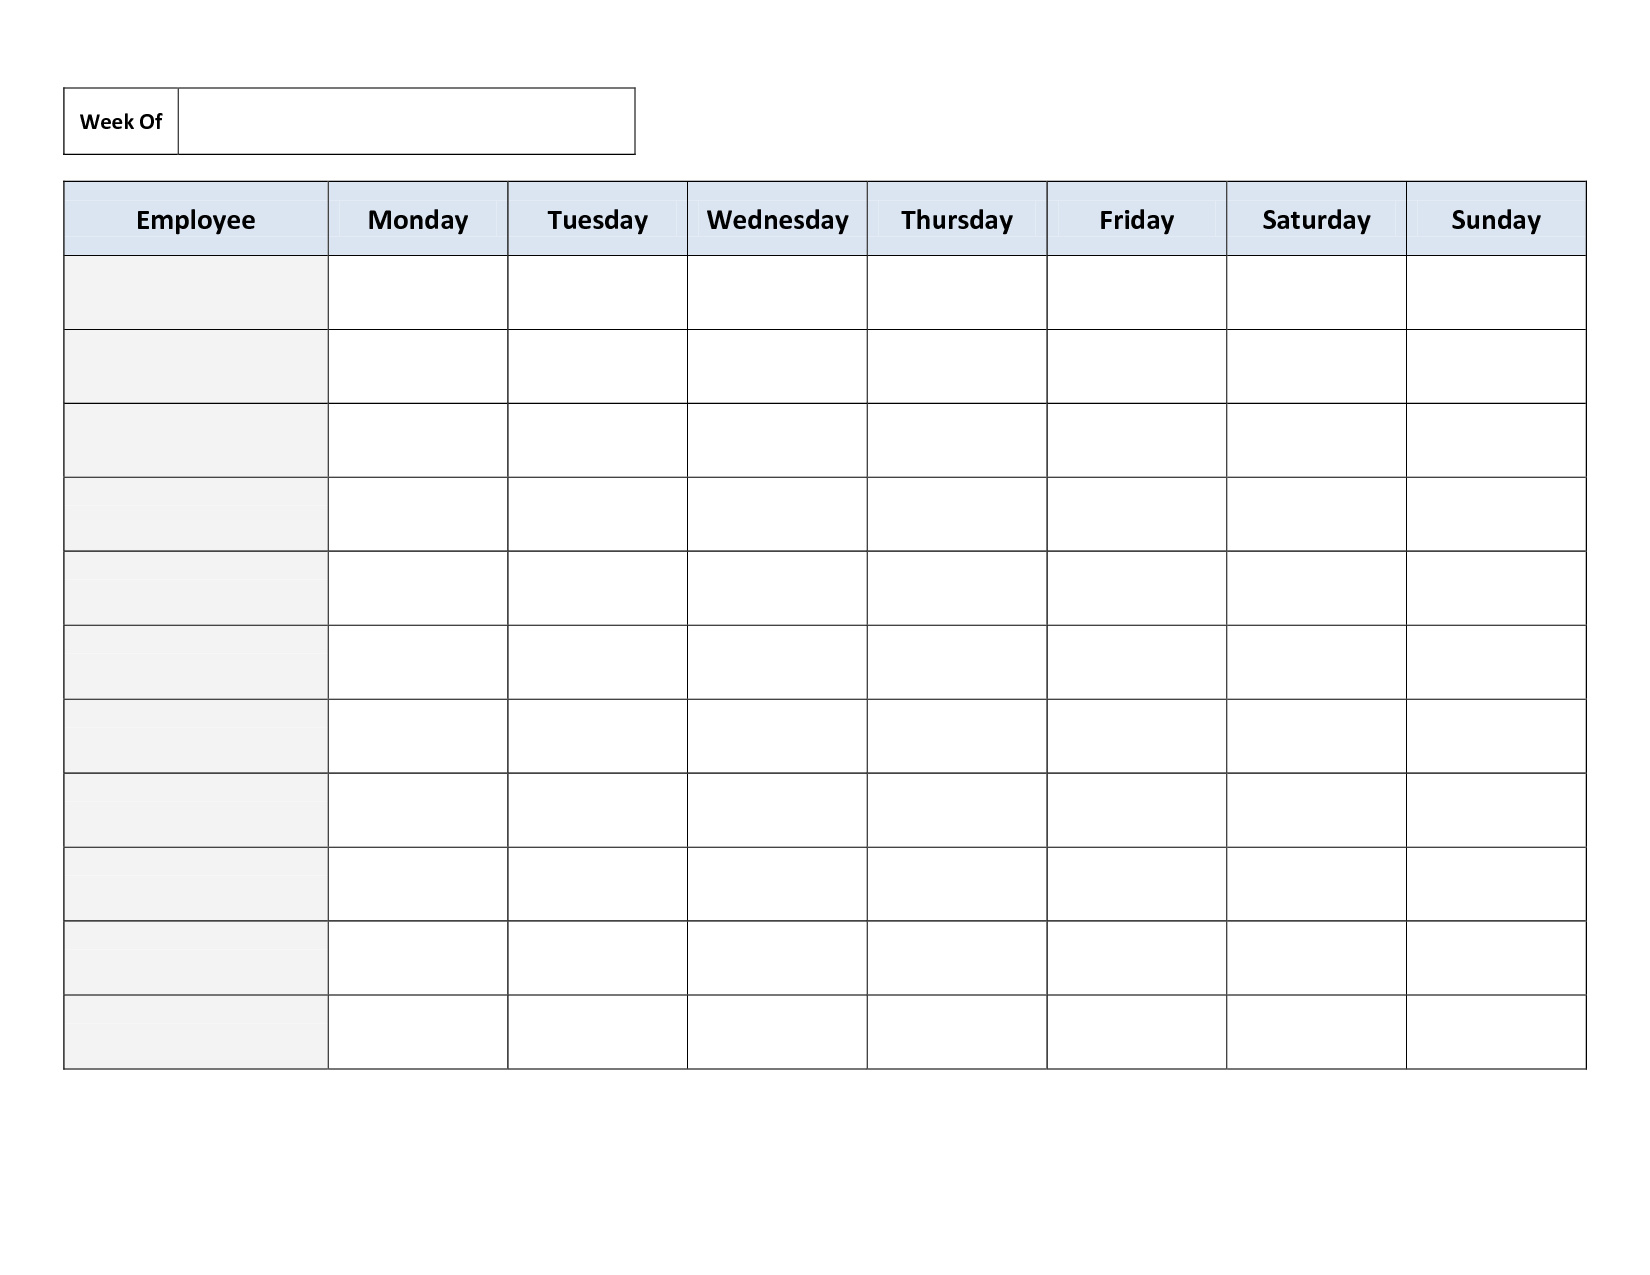 my work schedule